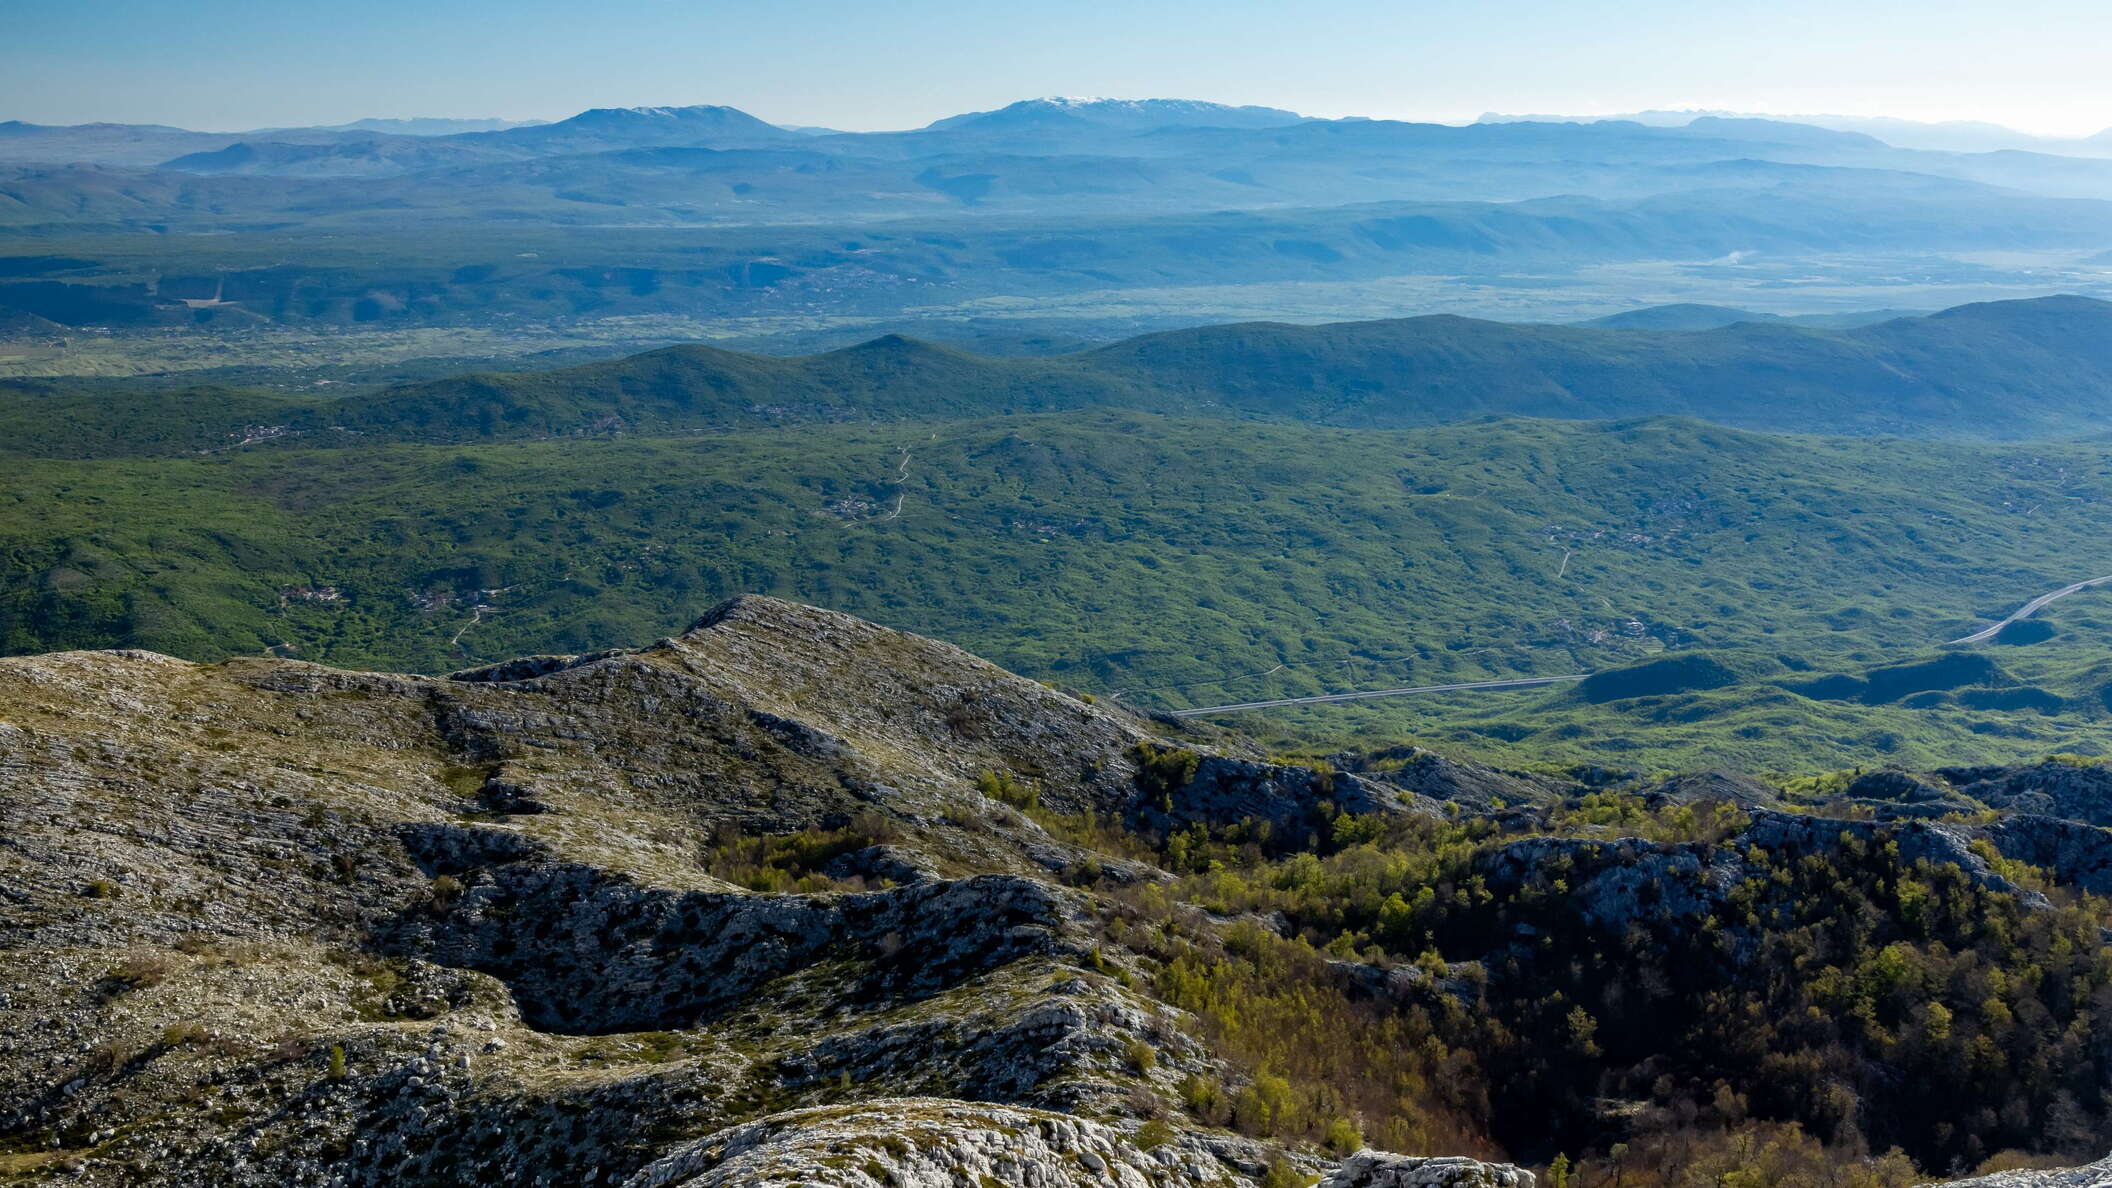 Dinaric karst landscape with Vran and Čvrsnica